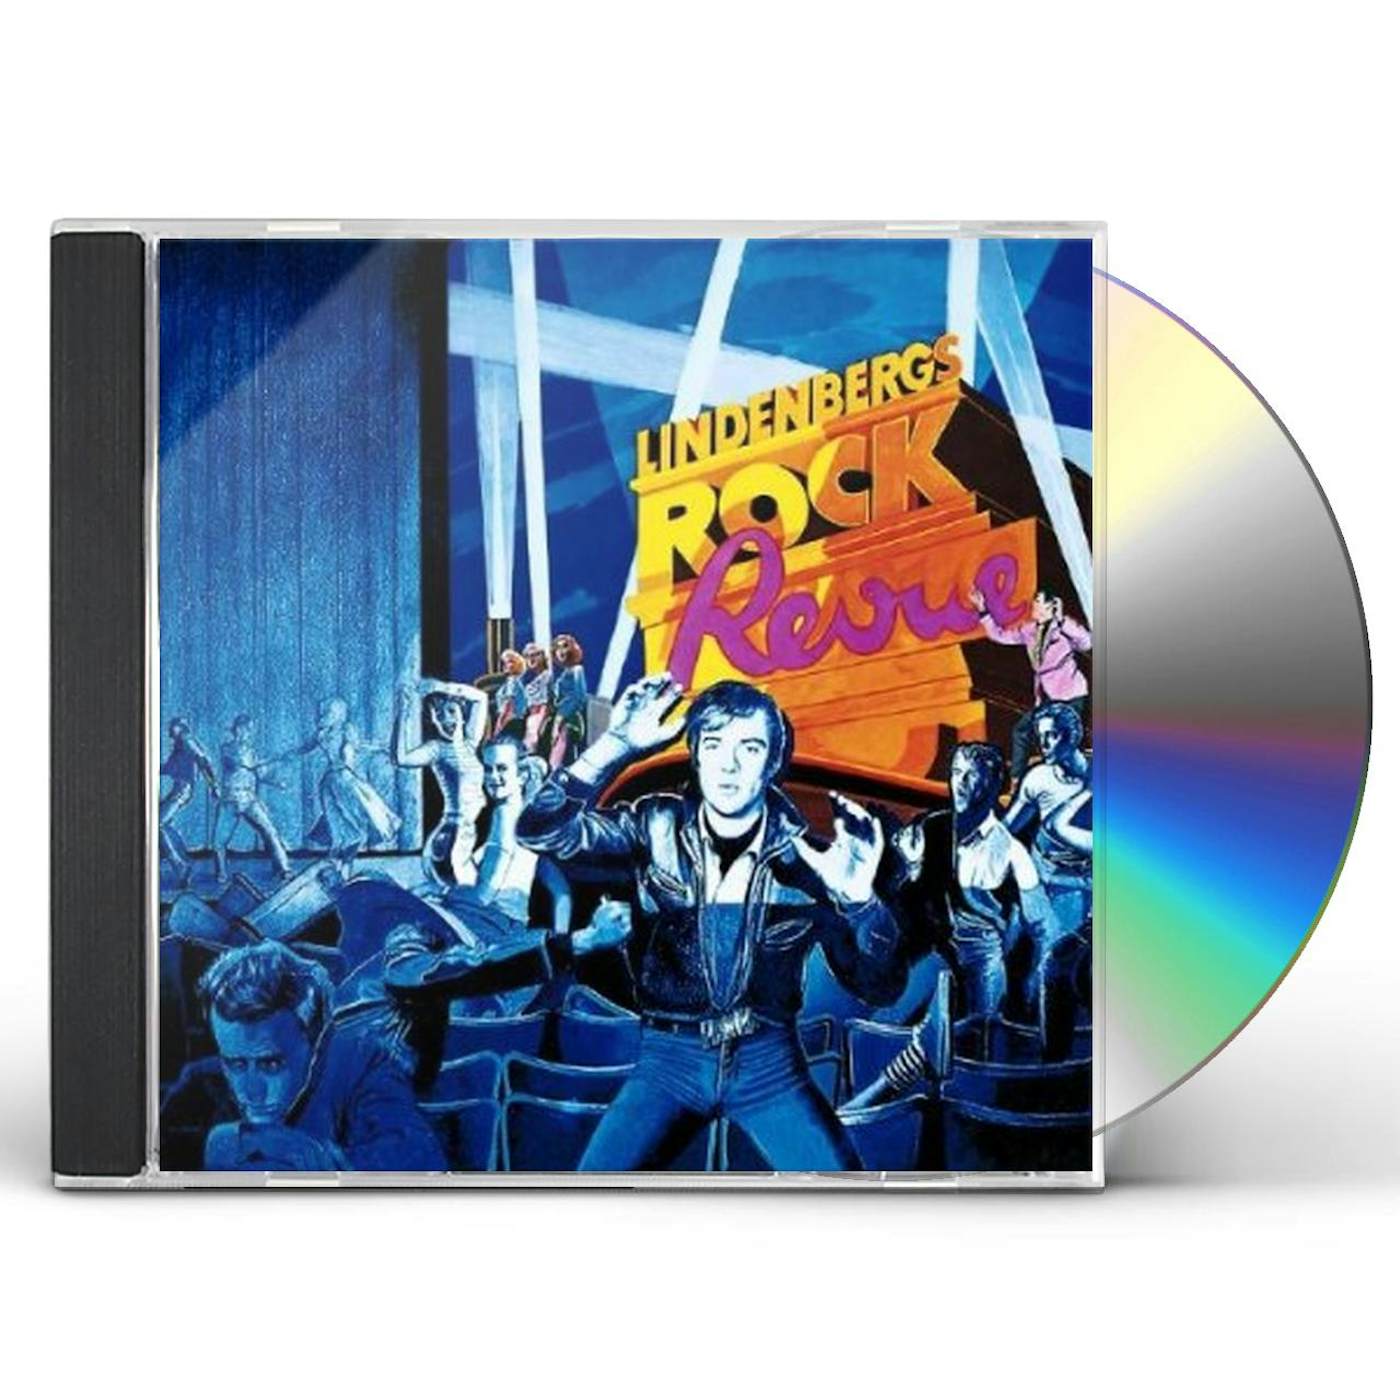 Udo Lindenberg ROCK REVUE CD